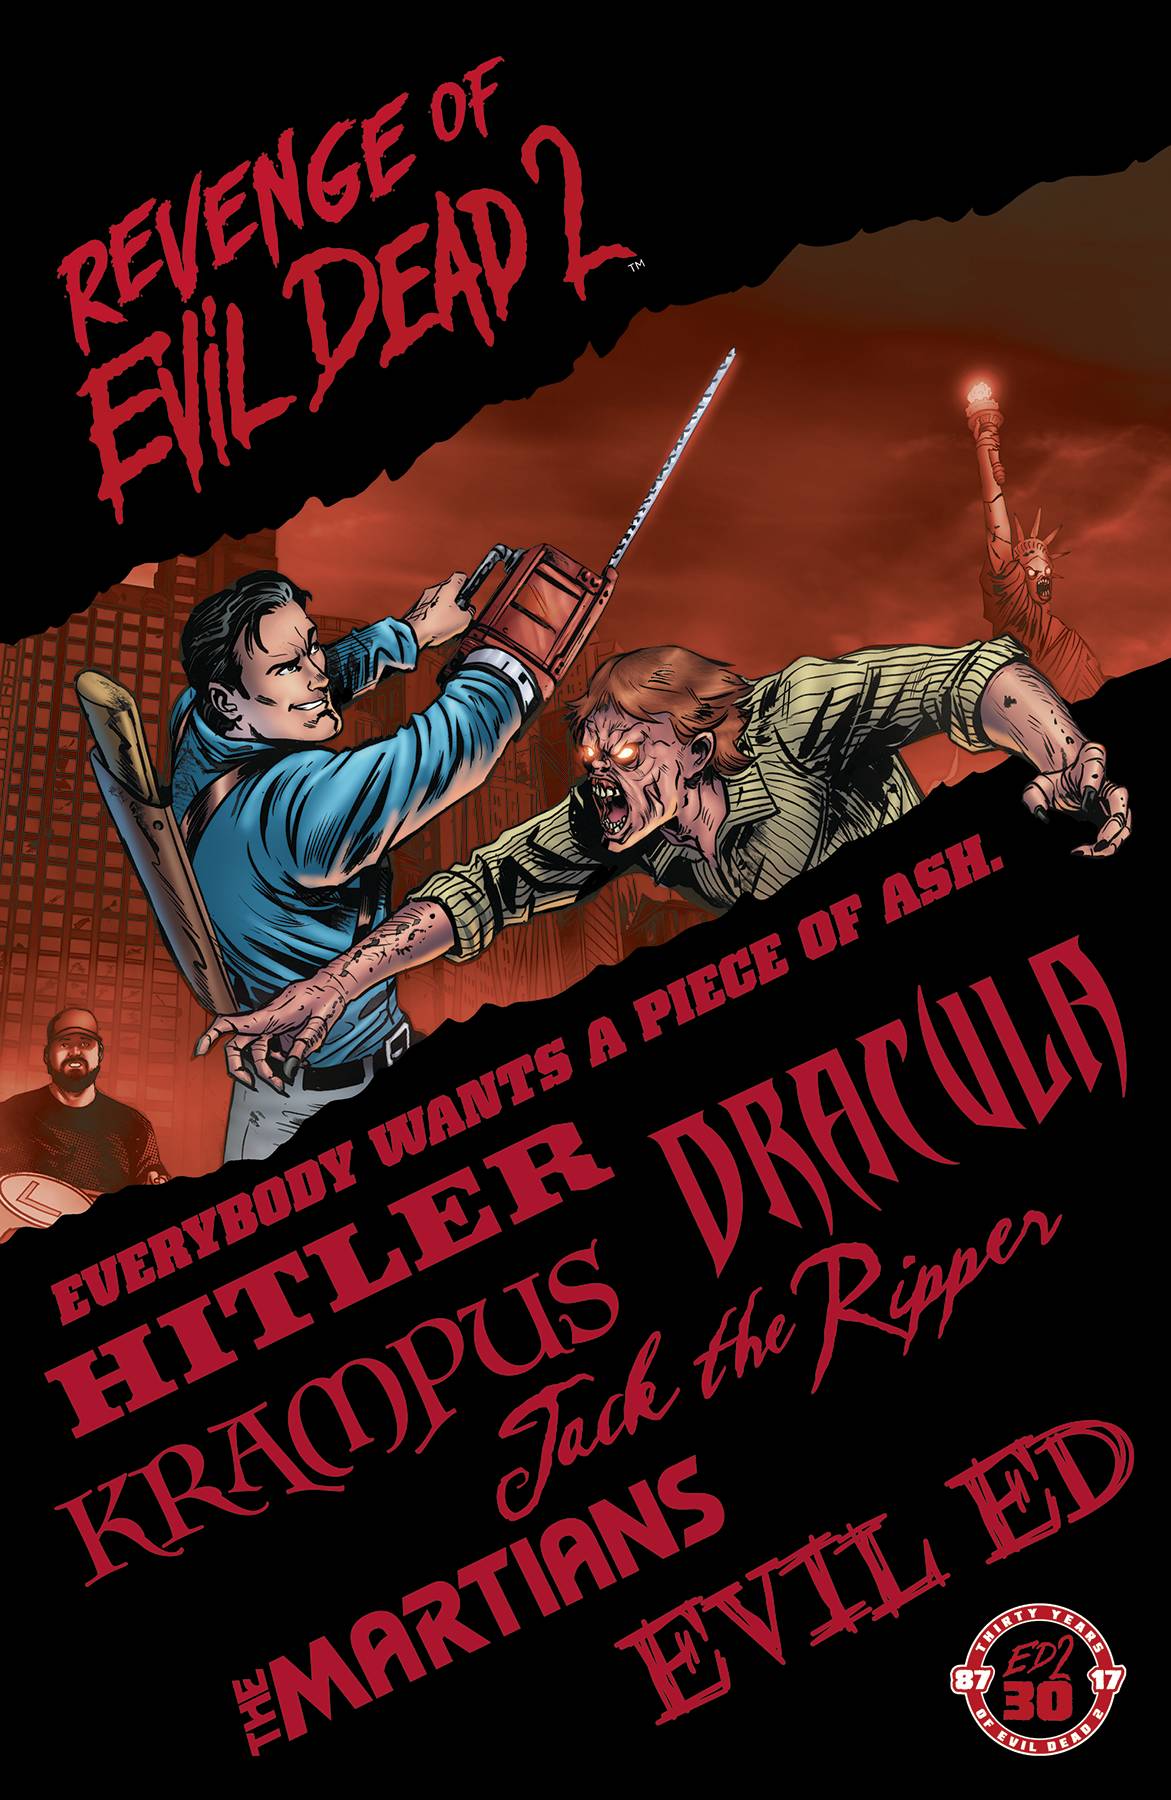 Revenge of Evil Dead 2 Graphic Novel